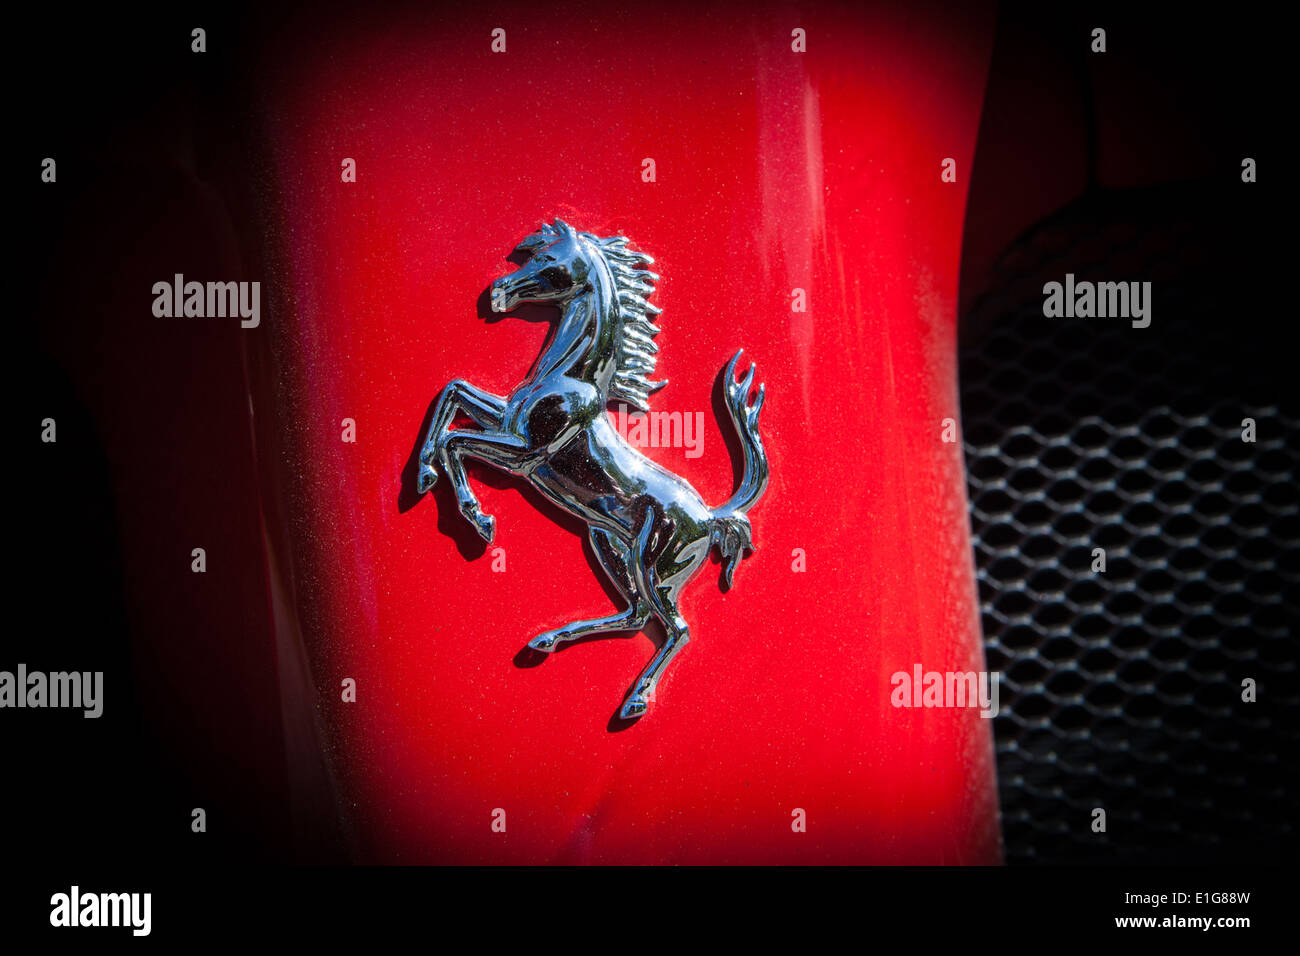 L'étalon cabré badge Ferrari sur theLaFerrari super voiture hybride Banque D'Images